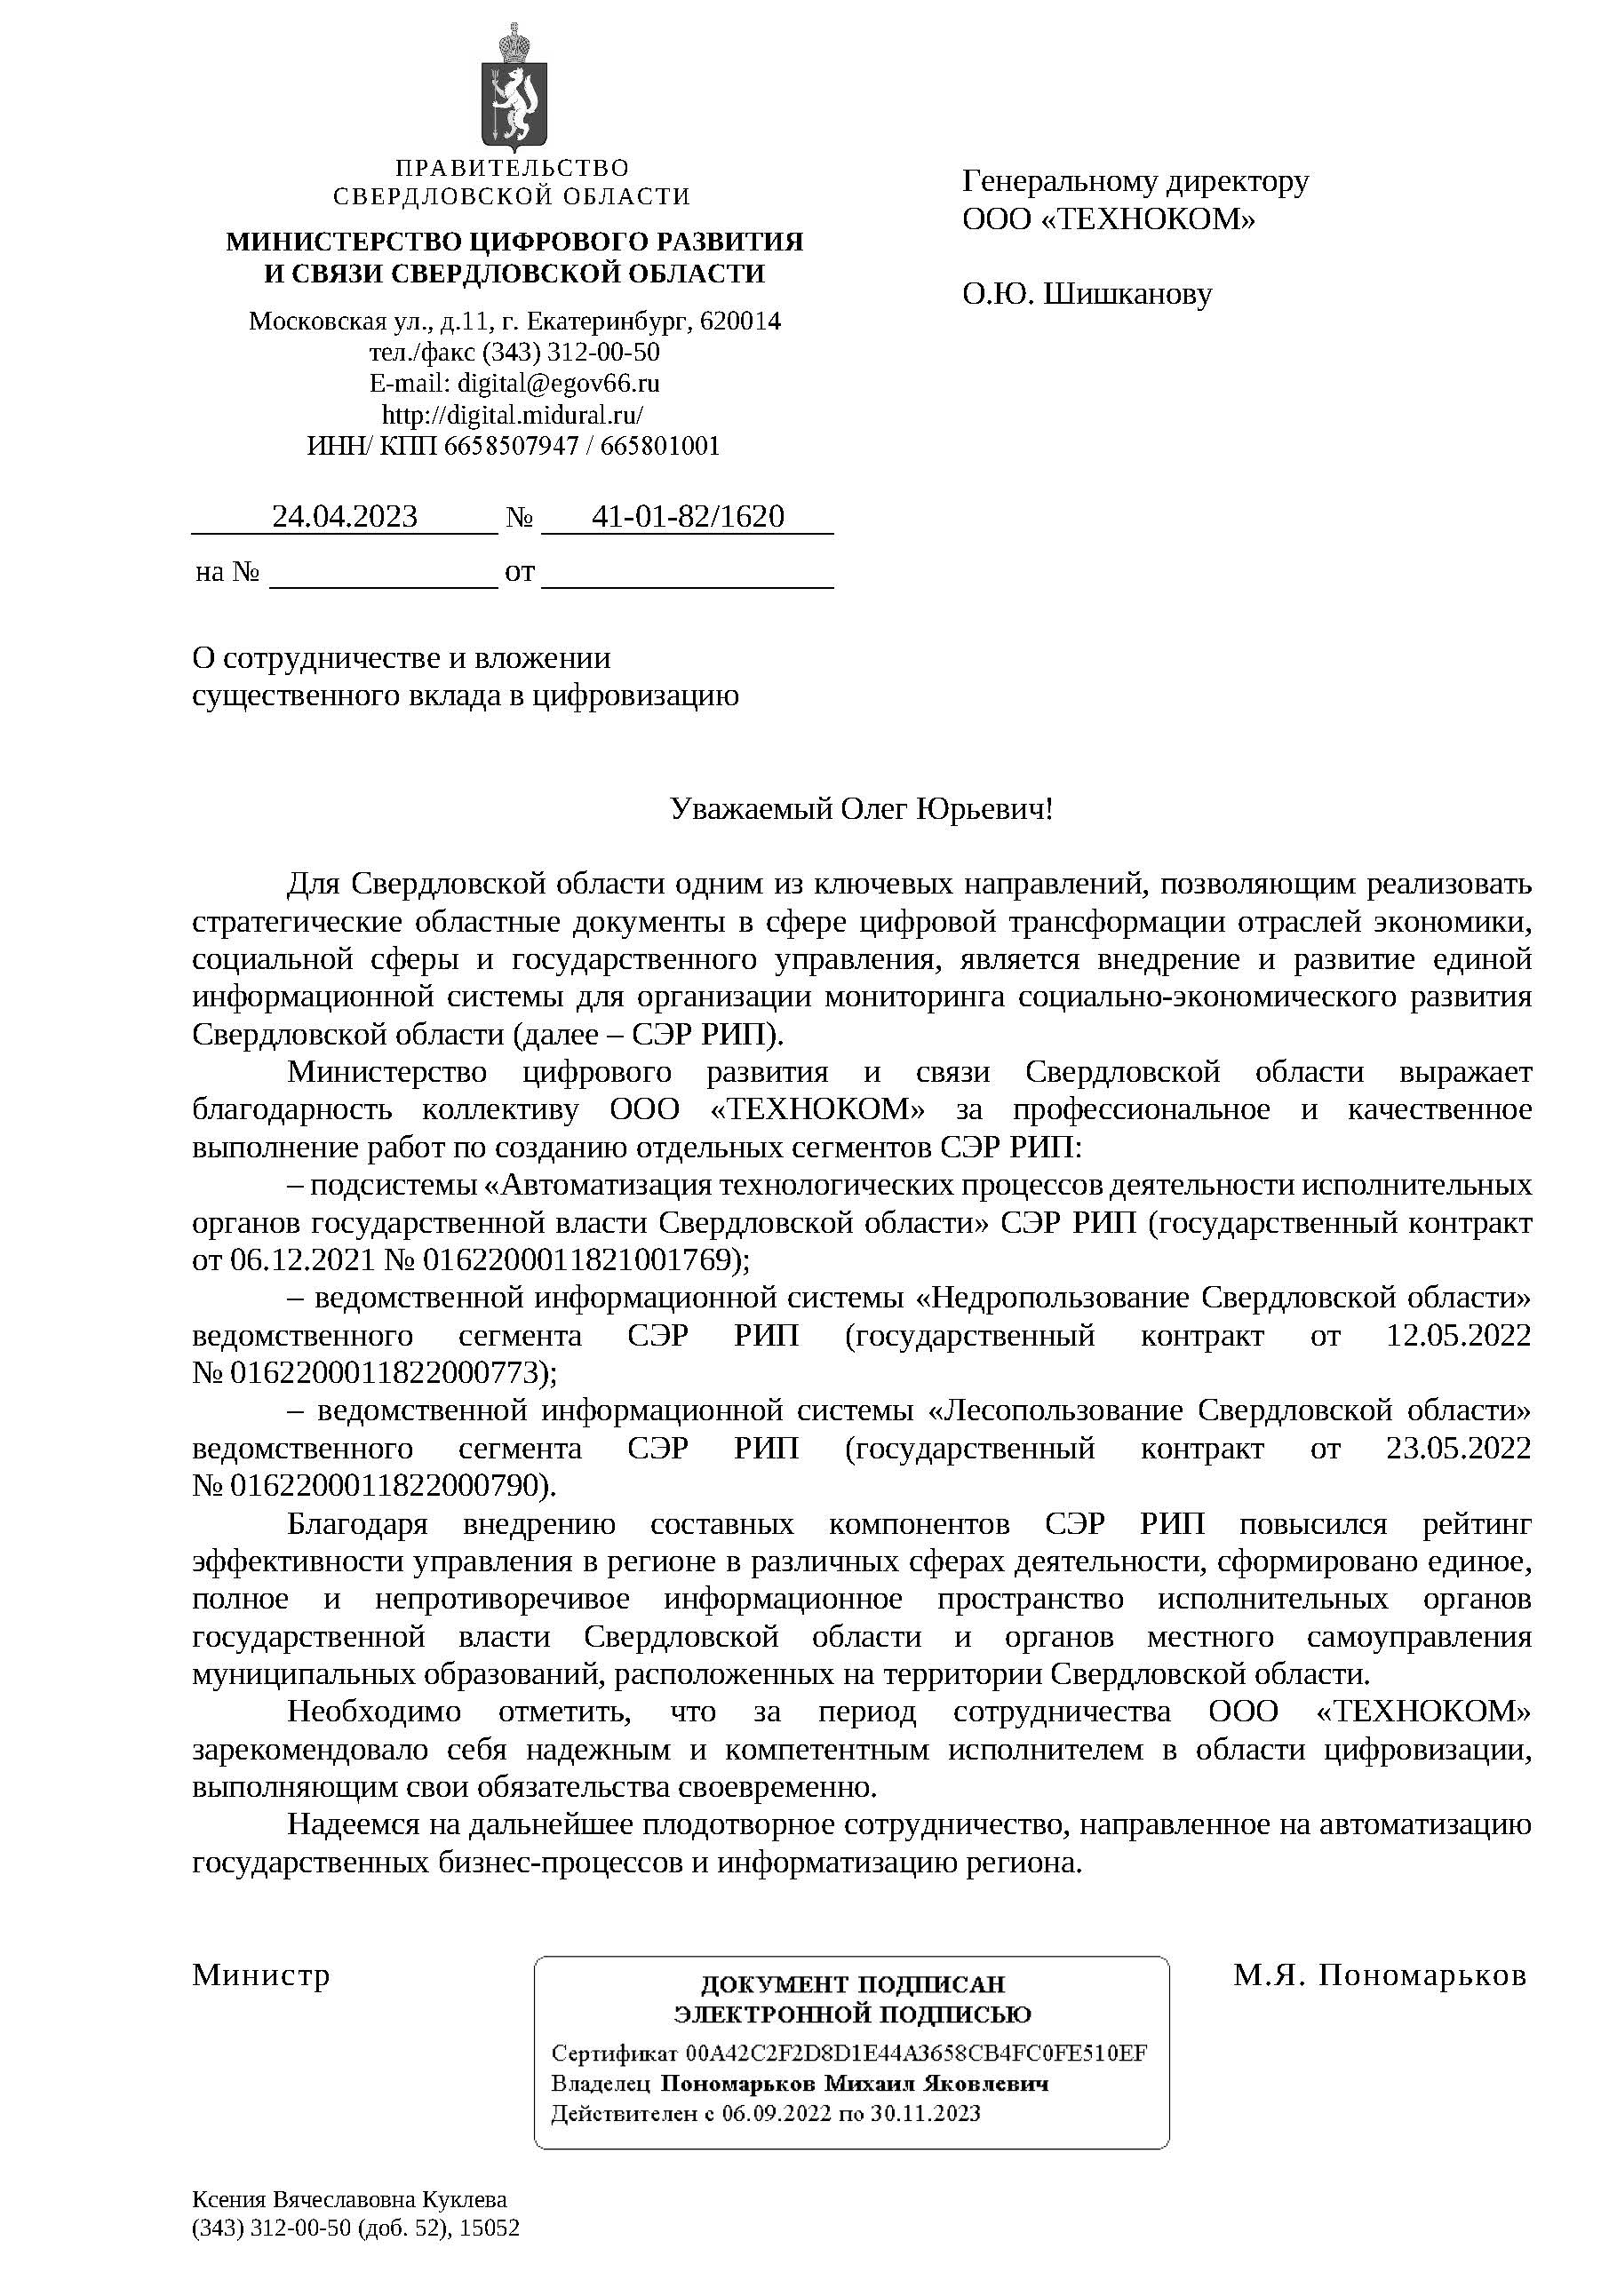 Письмо Министерства цифрового развития и связи Свердловской области о сотрудничестве и вложении вклада в цифровизацию